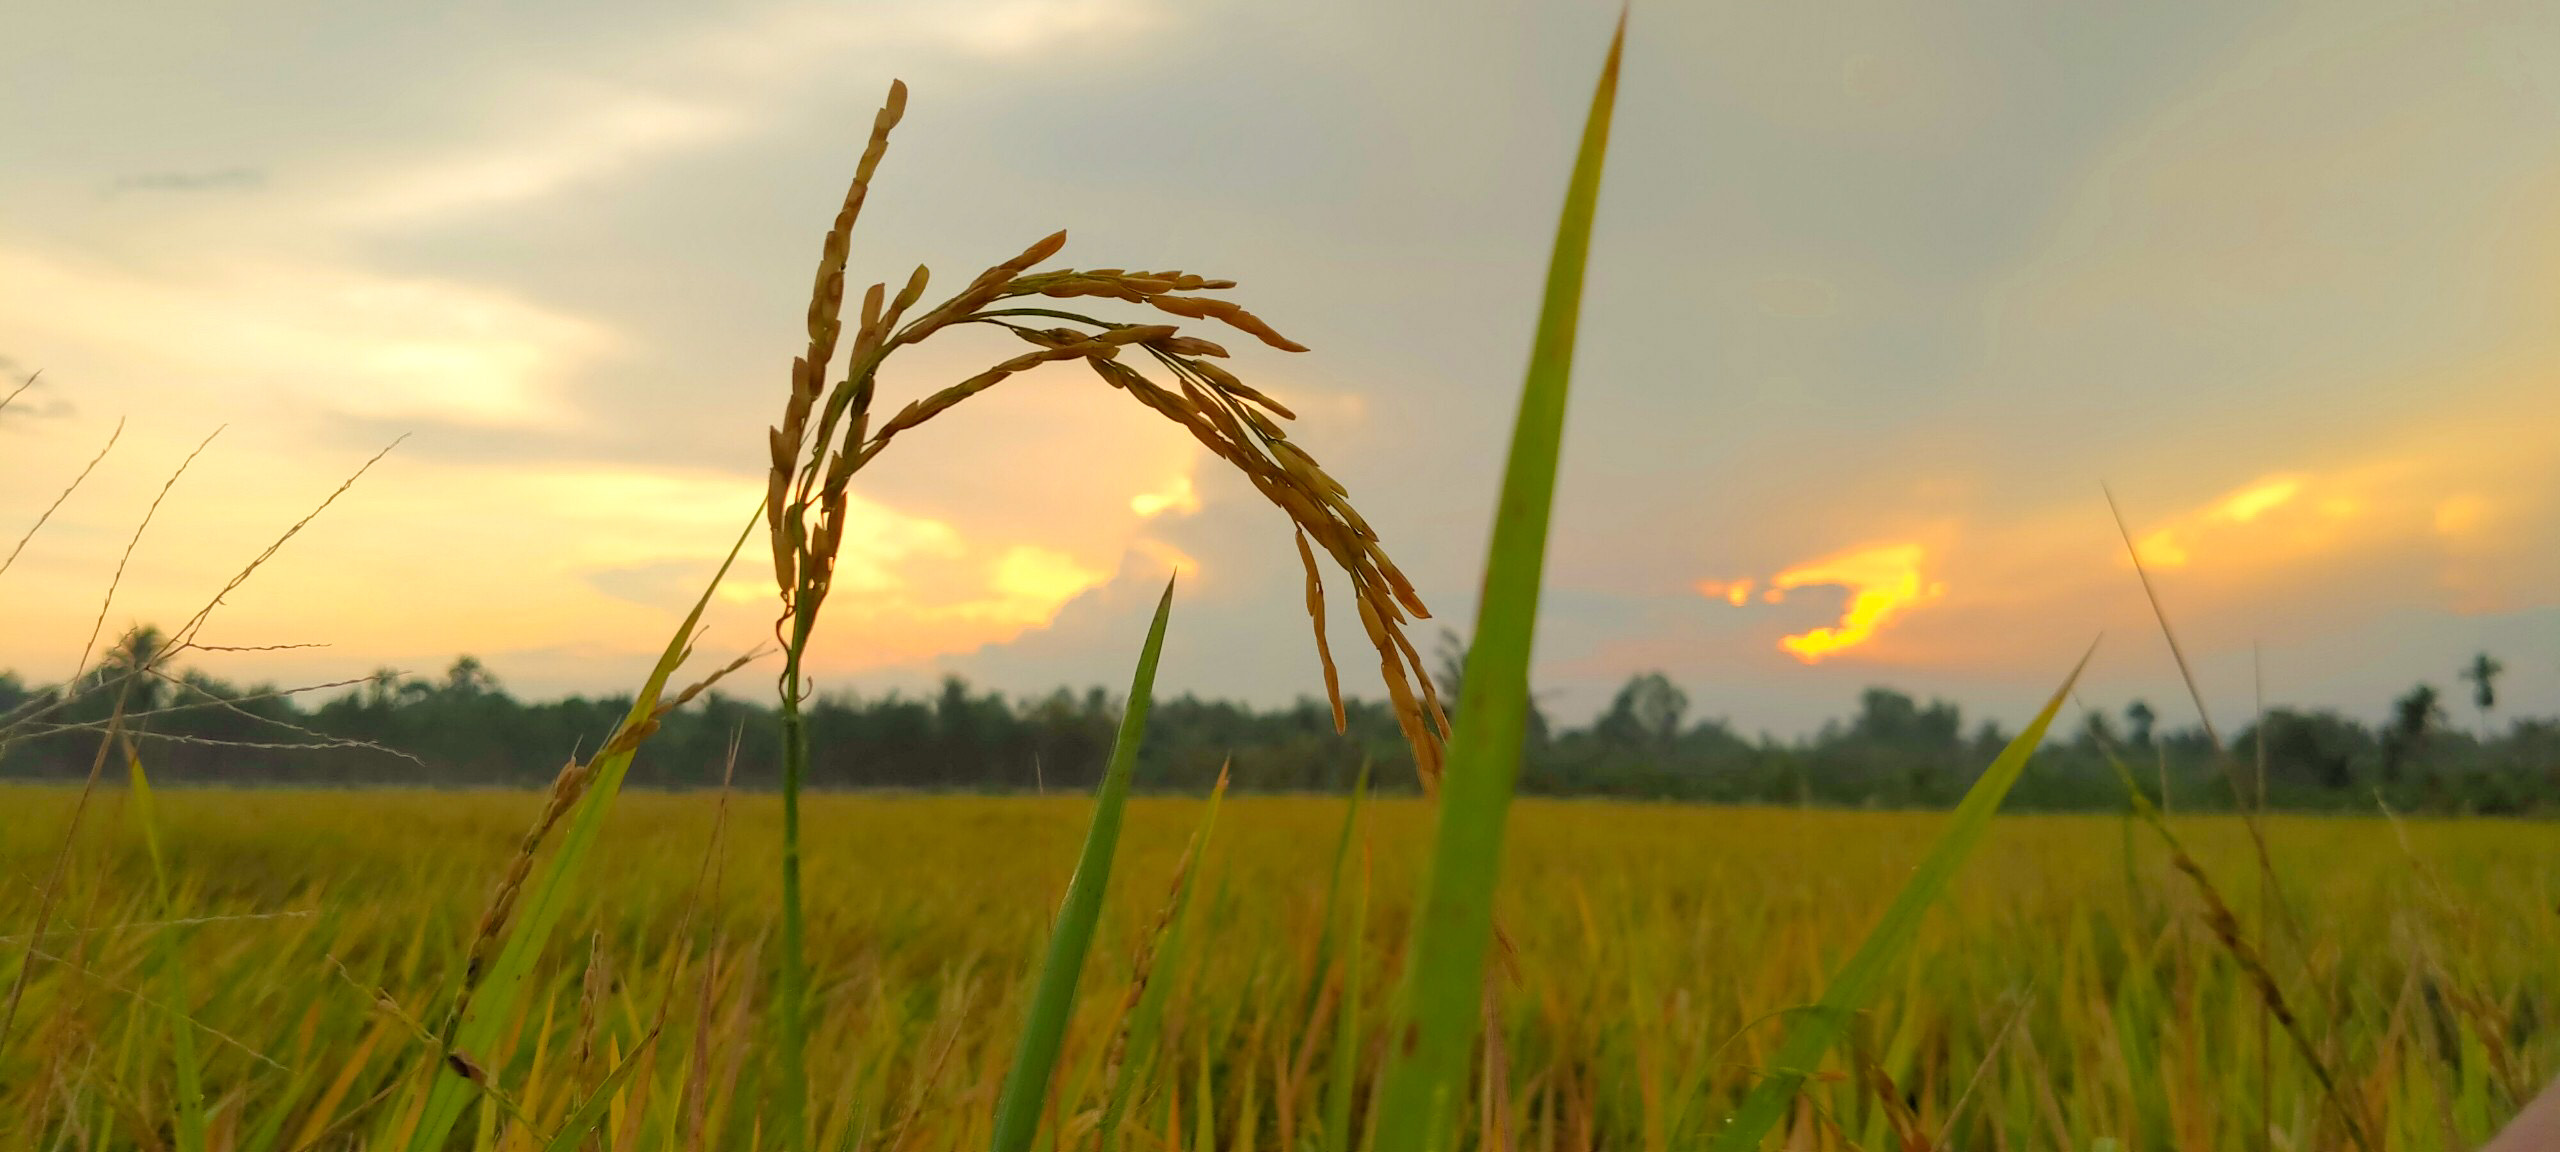 Cánh đồng lúa: Một mùa đông nữa đã qua, giờ đây cánh đồng lúa đang tràn đầy màu sắc, tạo nên một cảnh đẹp tuyệt vời. Hãy dành chút thời gian để thưởng thức vẻ đẹp quyến rũ của những bông lúa vàng rực rỡ.